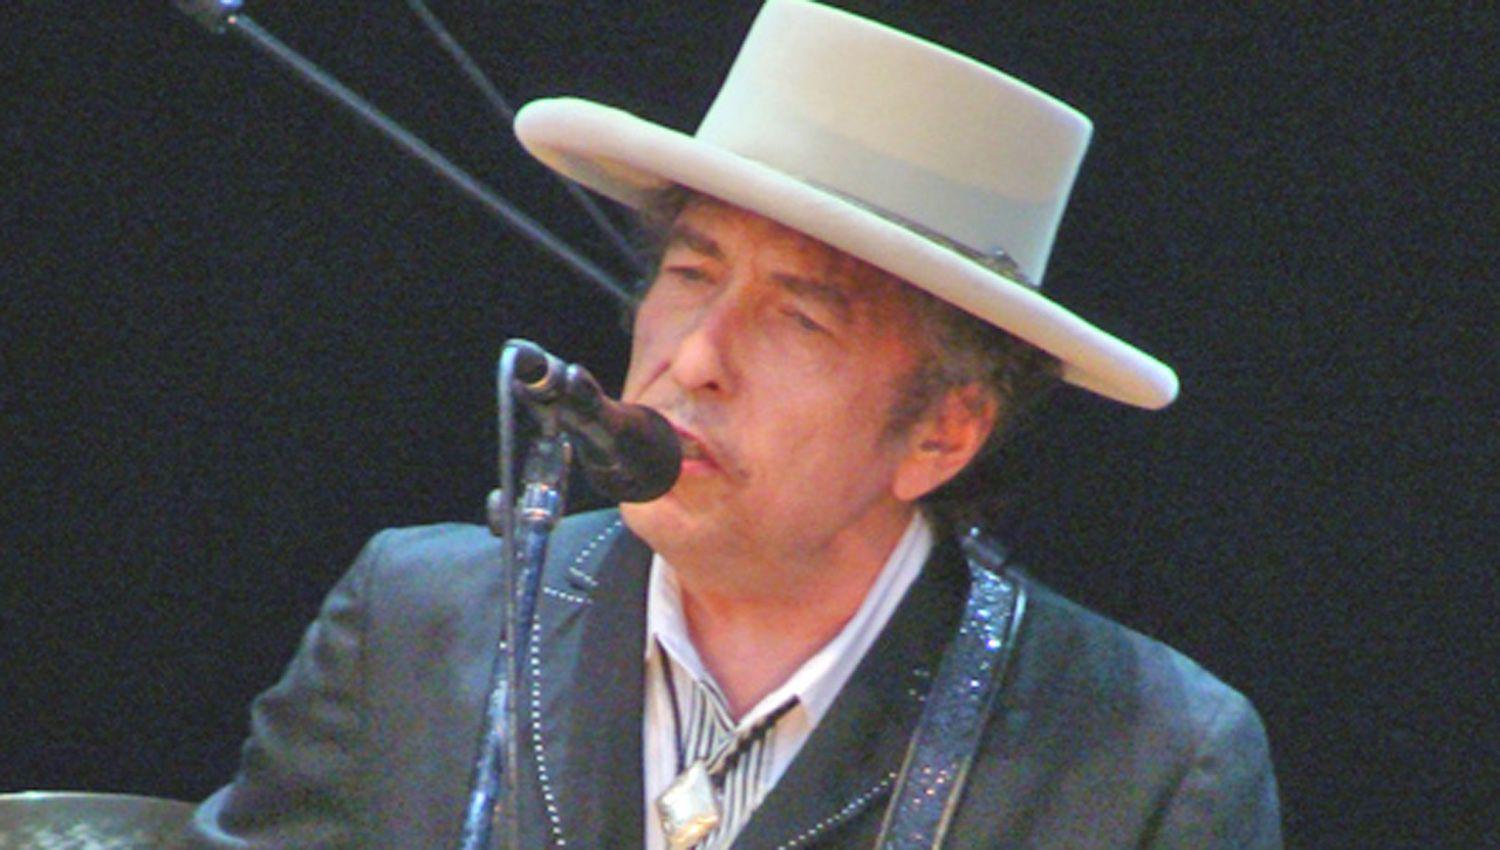 Demandaron a Bob Dylan por vender su cataacutelogo  a Universal Music Group